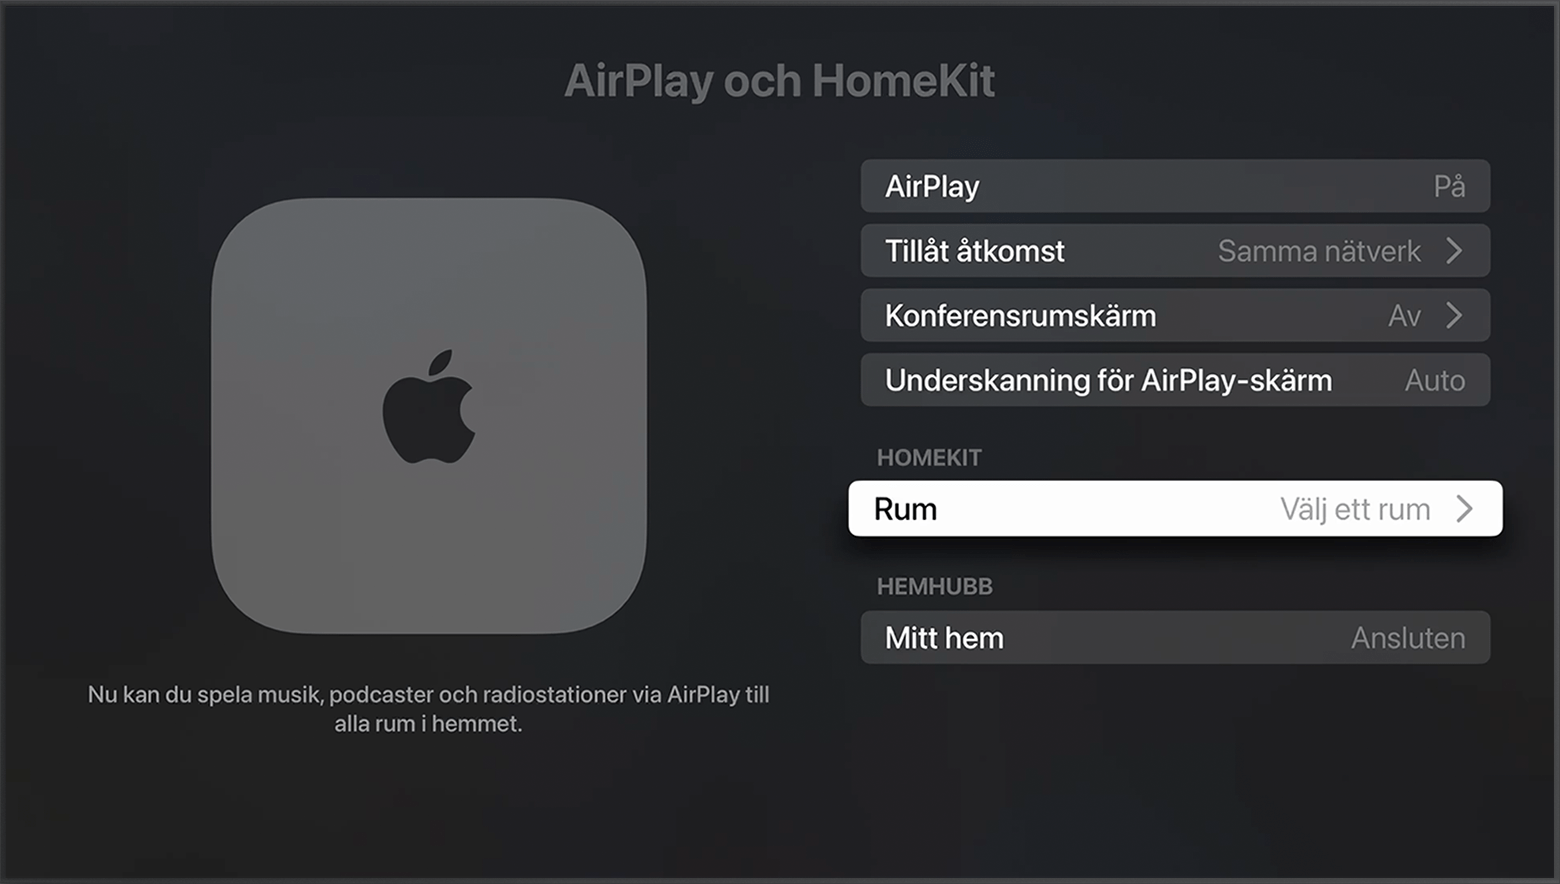 Rum visas under HomeKit på skärmen AirPlay och HomeKit i Apple TV-inställningarna